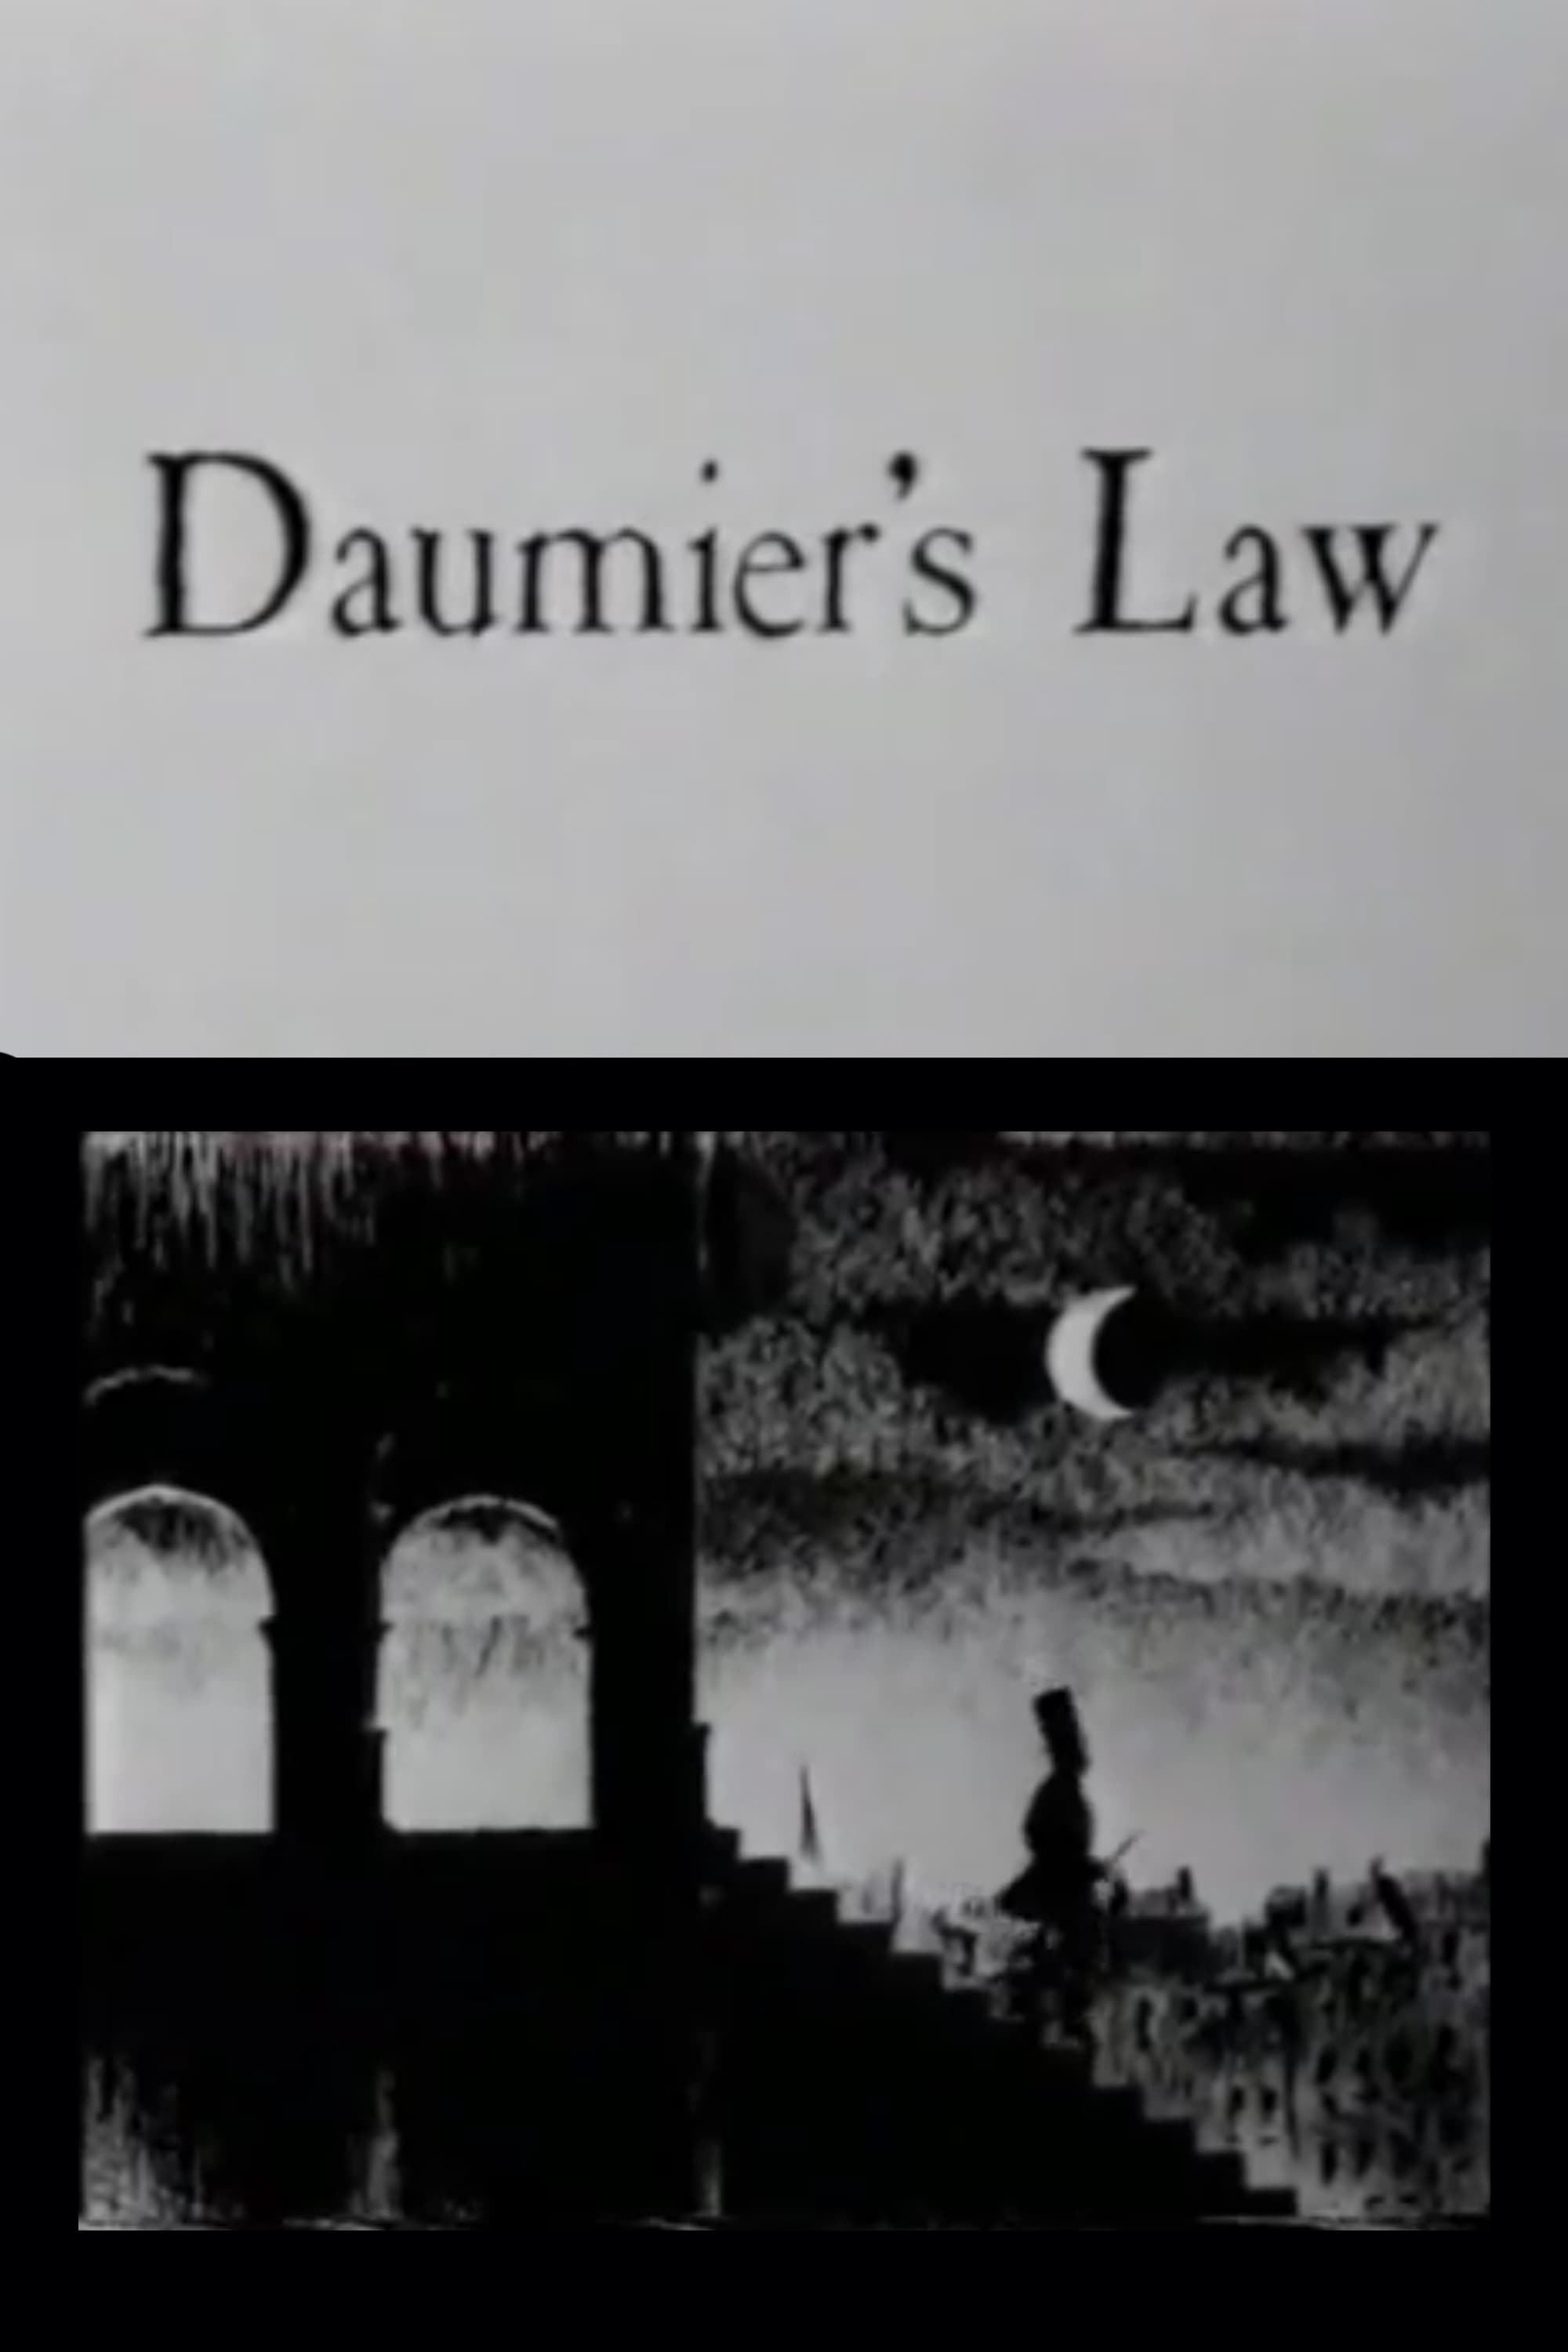 Daumier's Law